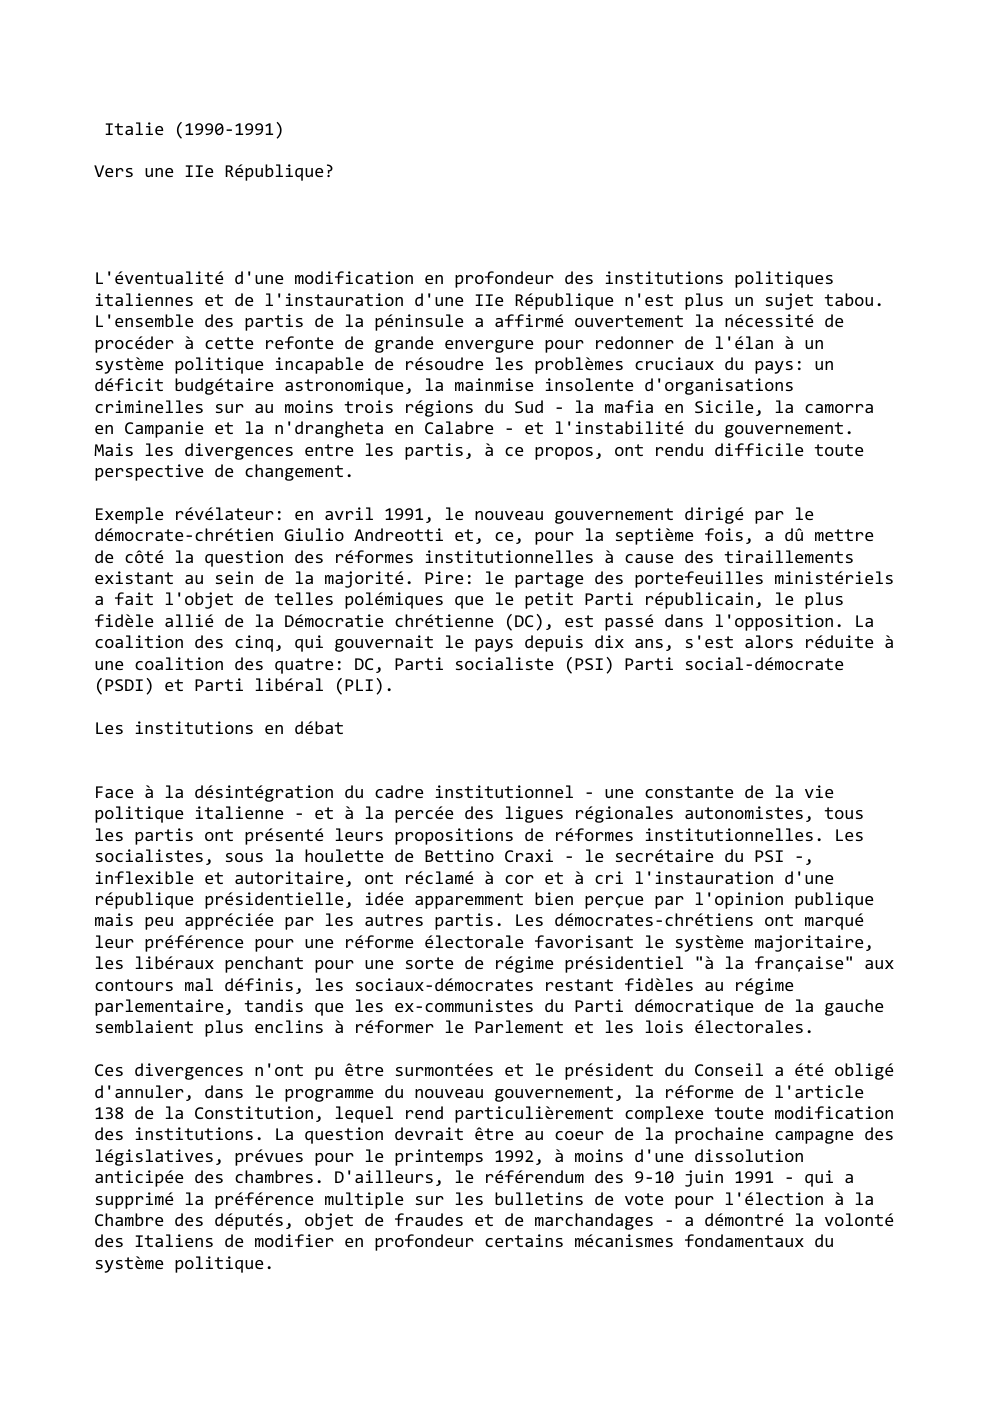 Prévisualisation du document Italie (1990-1991)
Vers une IIe République?

L'éventualité d'une modification en profondeur des institutions politiques
italiennes et de l'instauration d'une IIe...